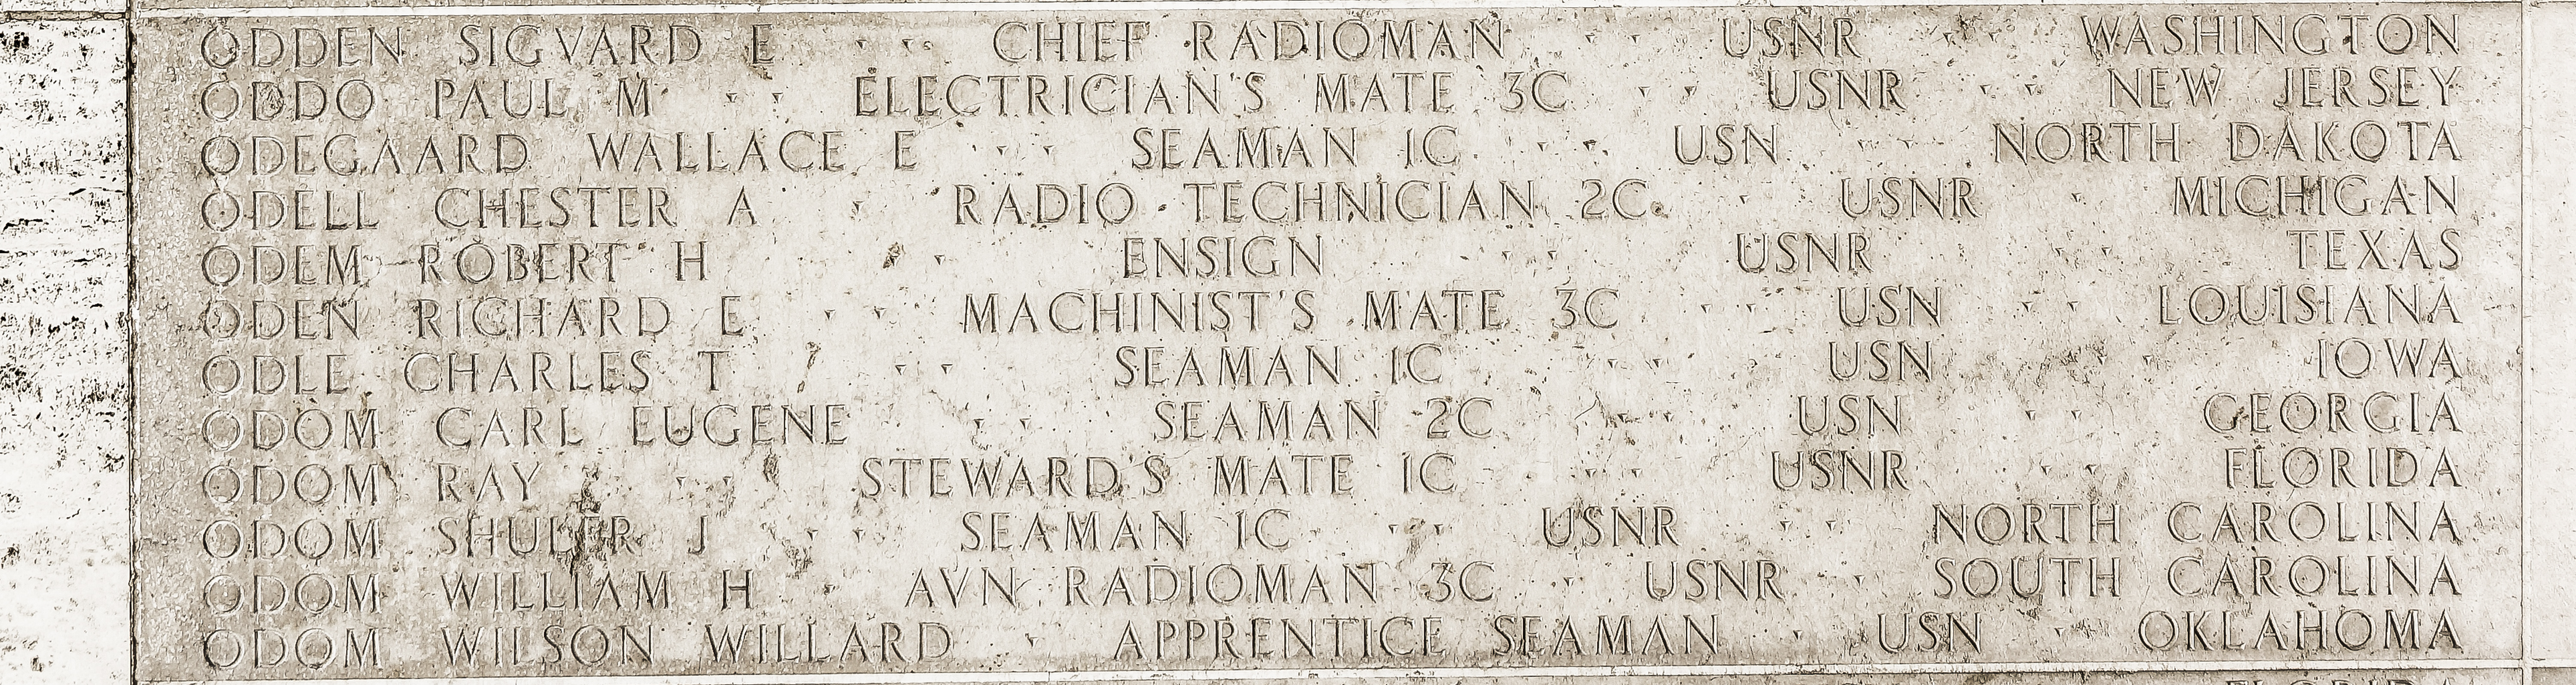 Wallace E. Odegaard, Seaman First Class